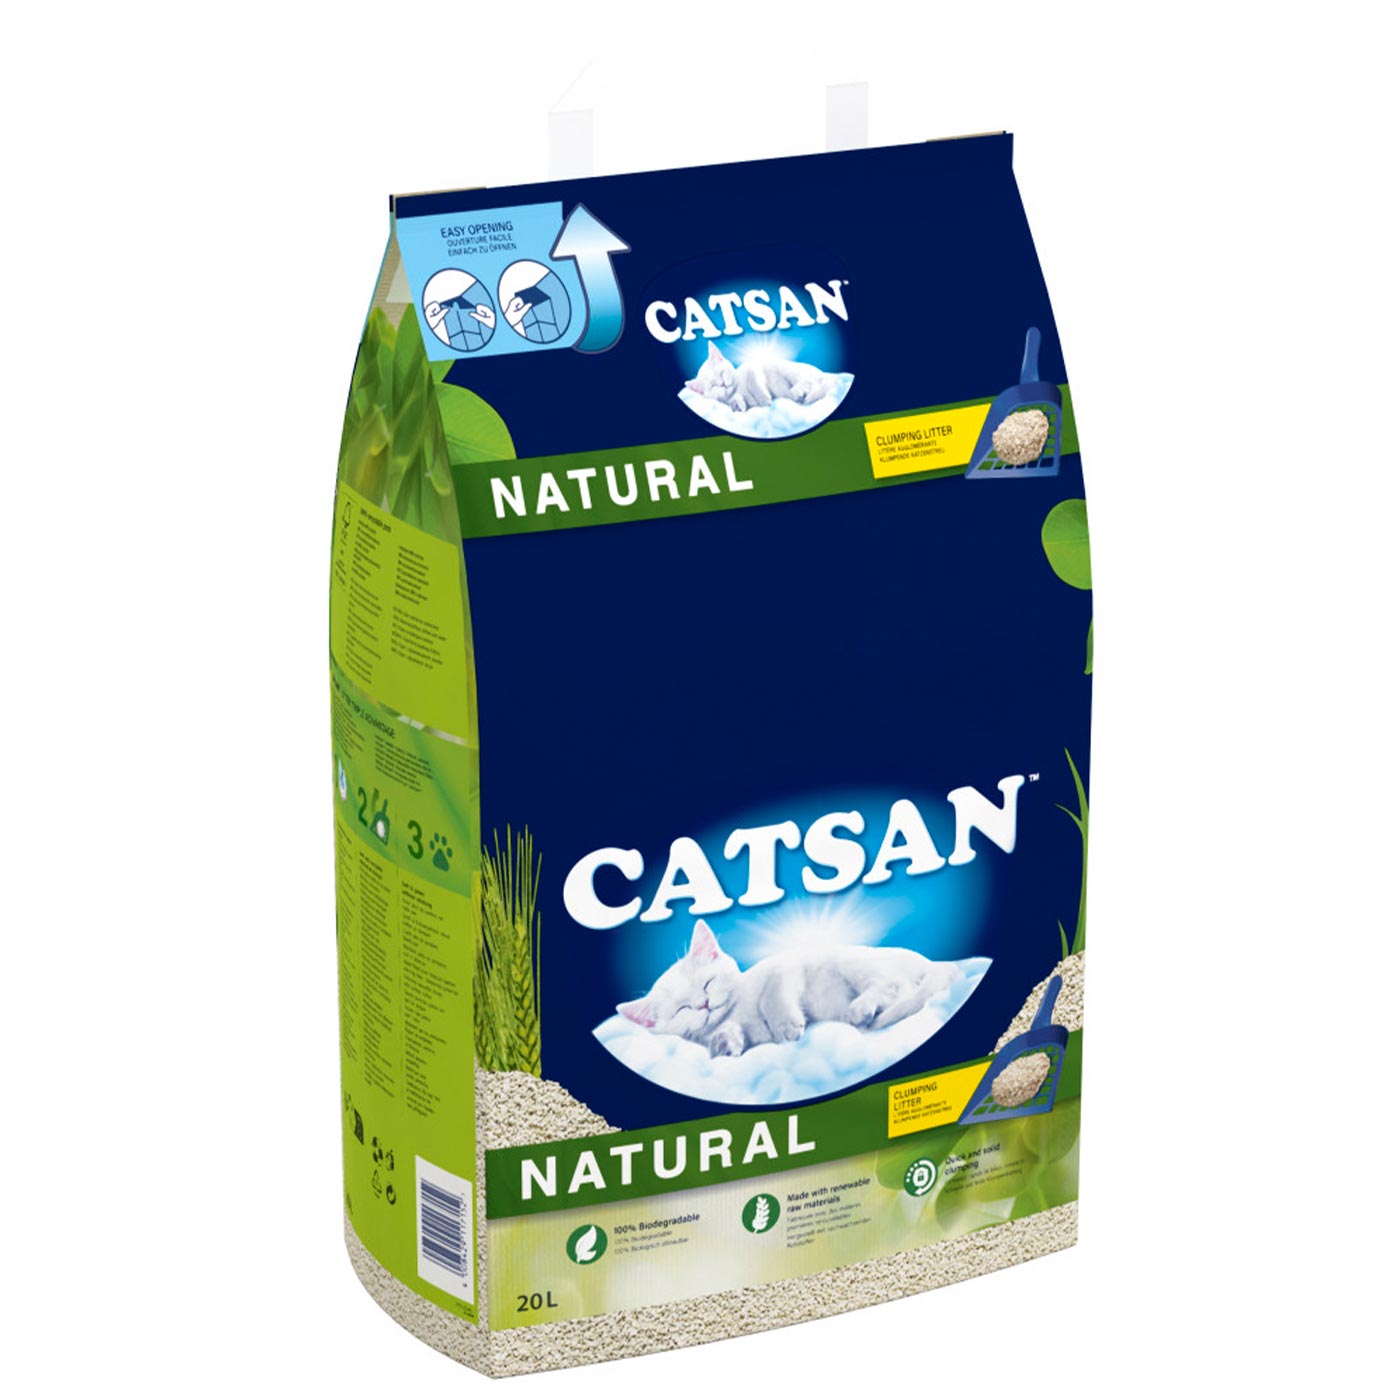 CATSAN Natural Biodegradable Clumping Cat Litter 20L